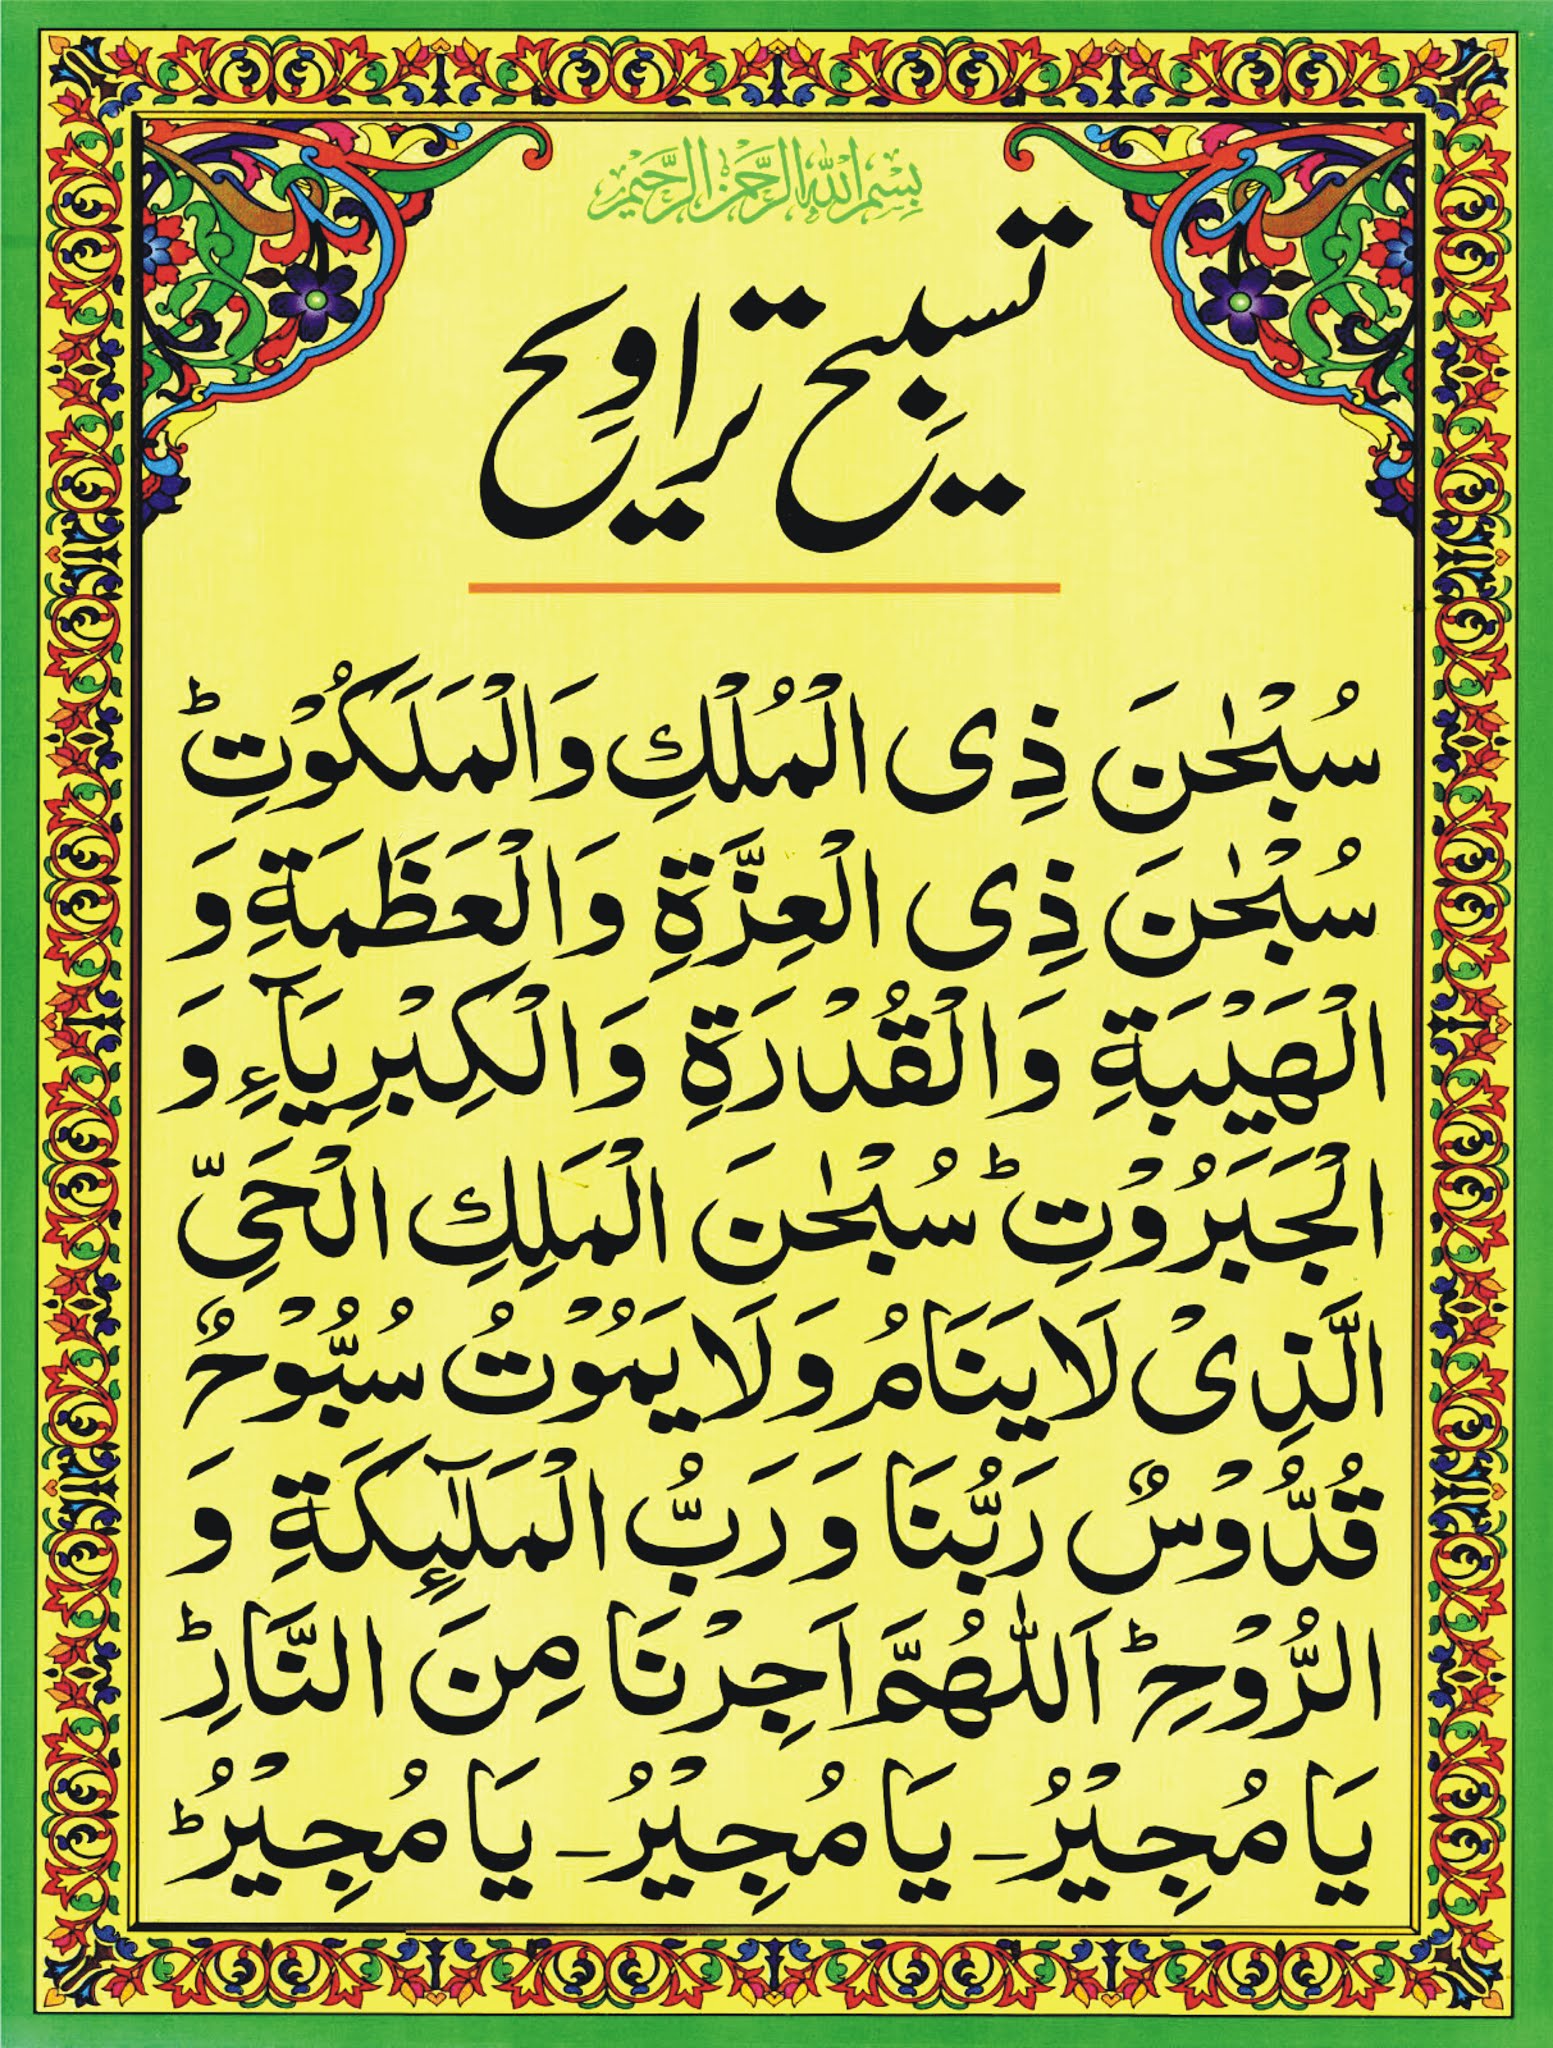 Taraweeh prayer niyat